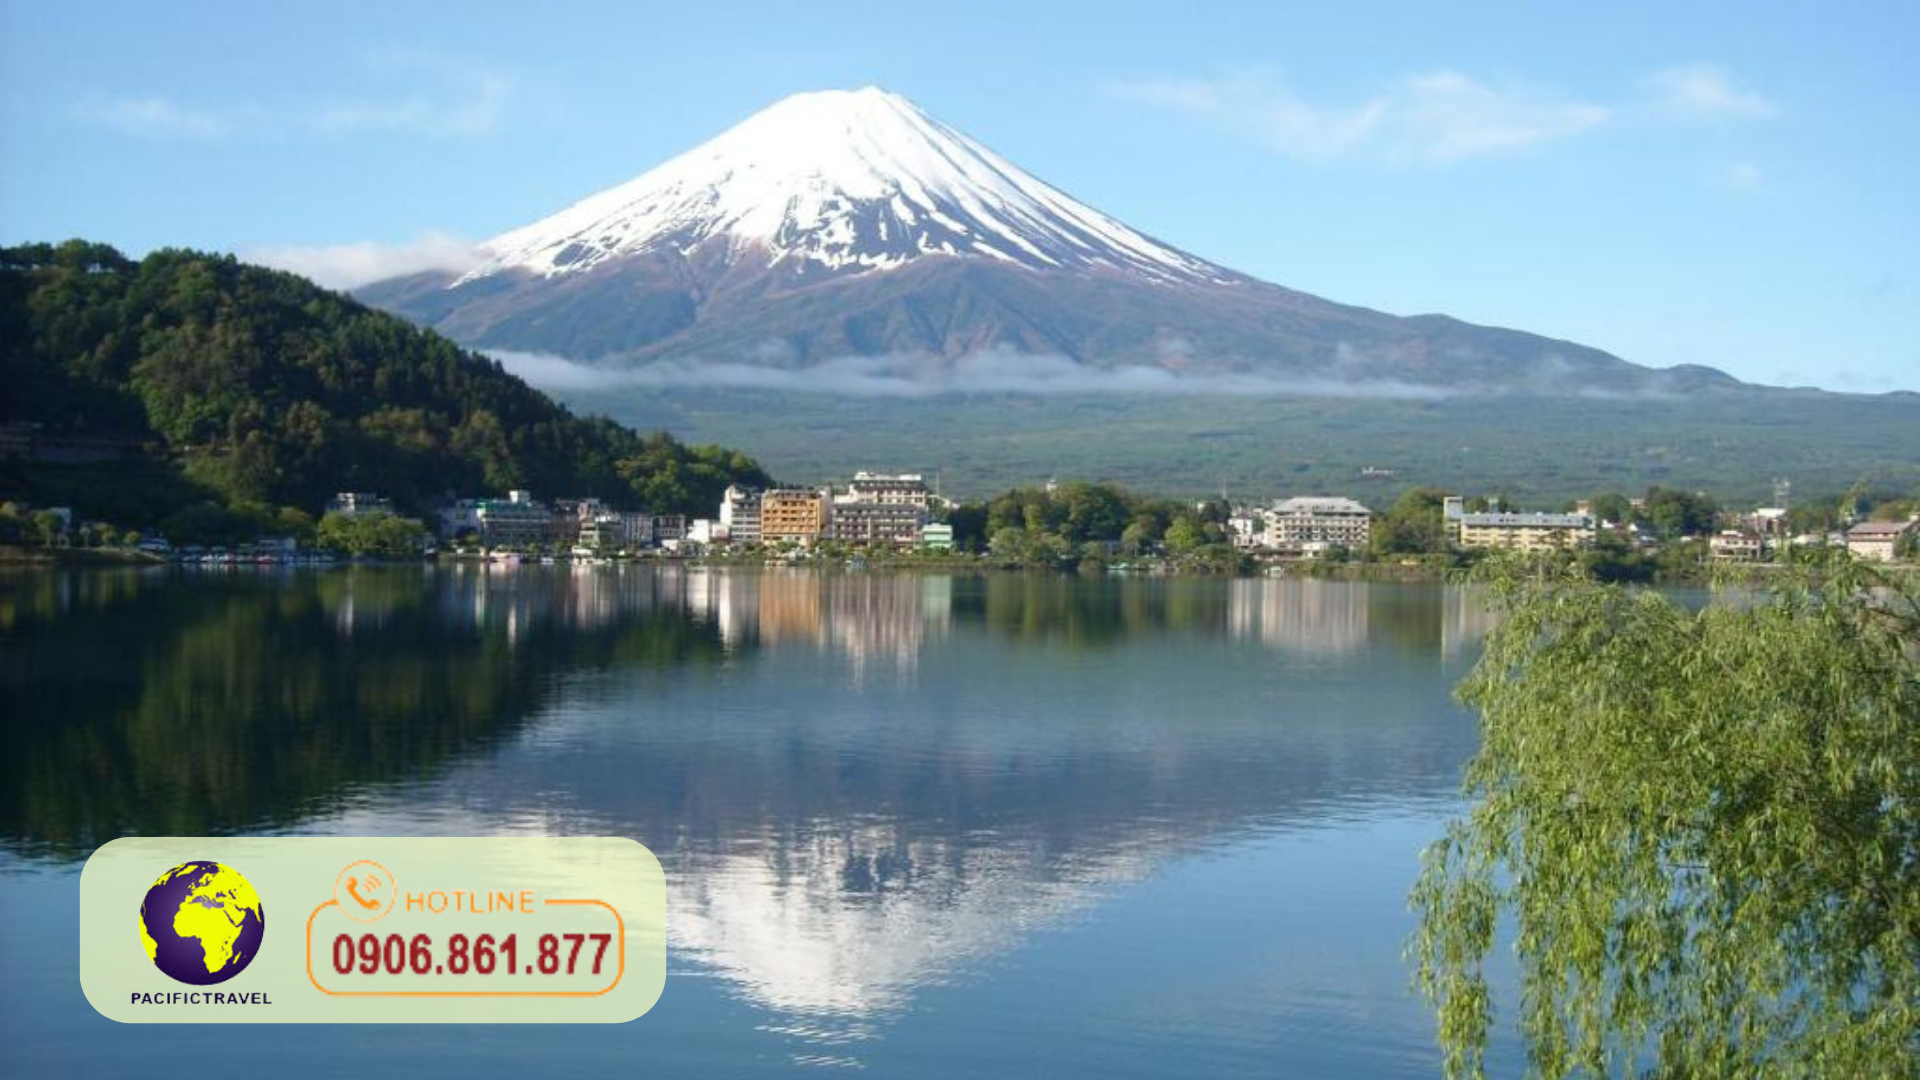 Đặt Tour Nhật Bản Giá Rẻ Pacific Travel